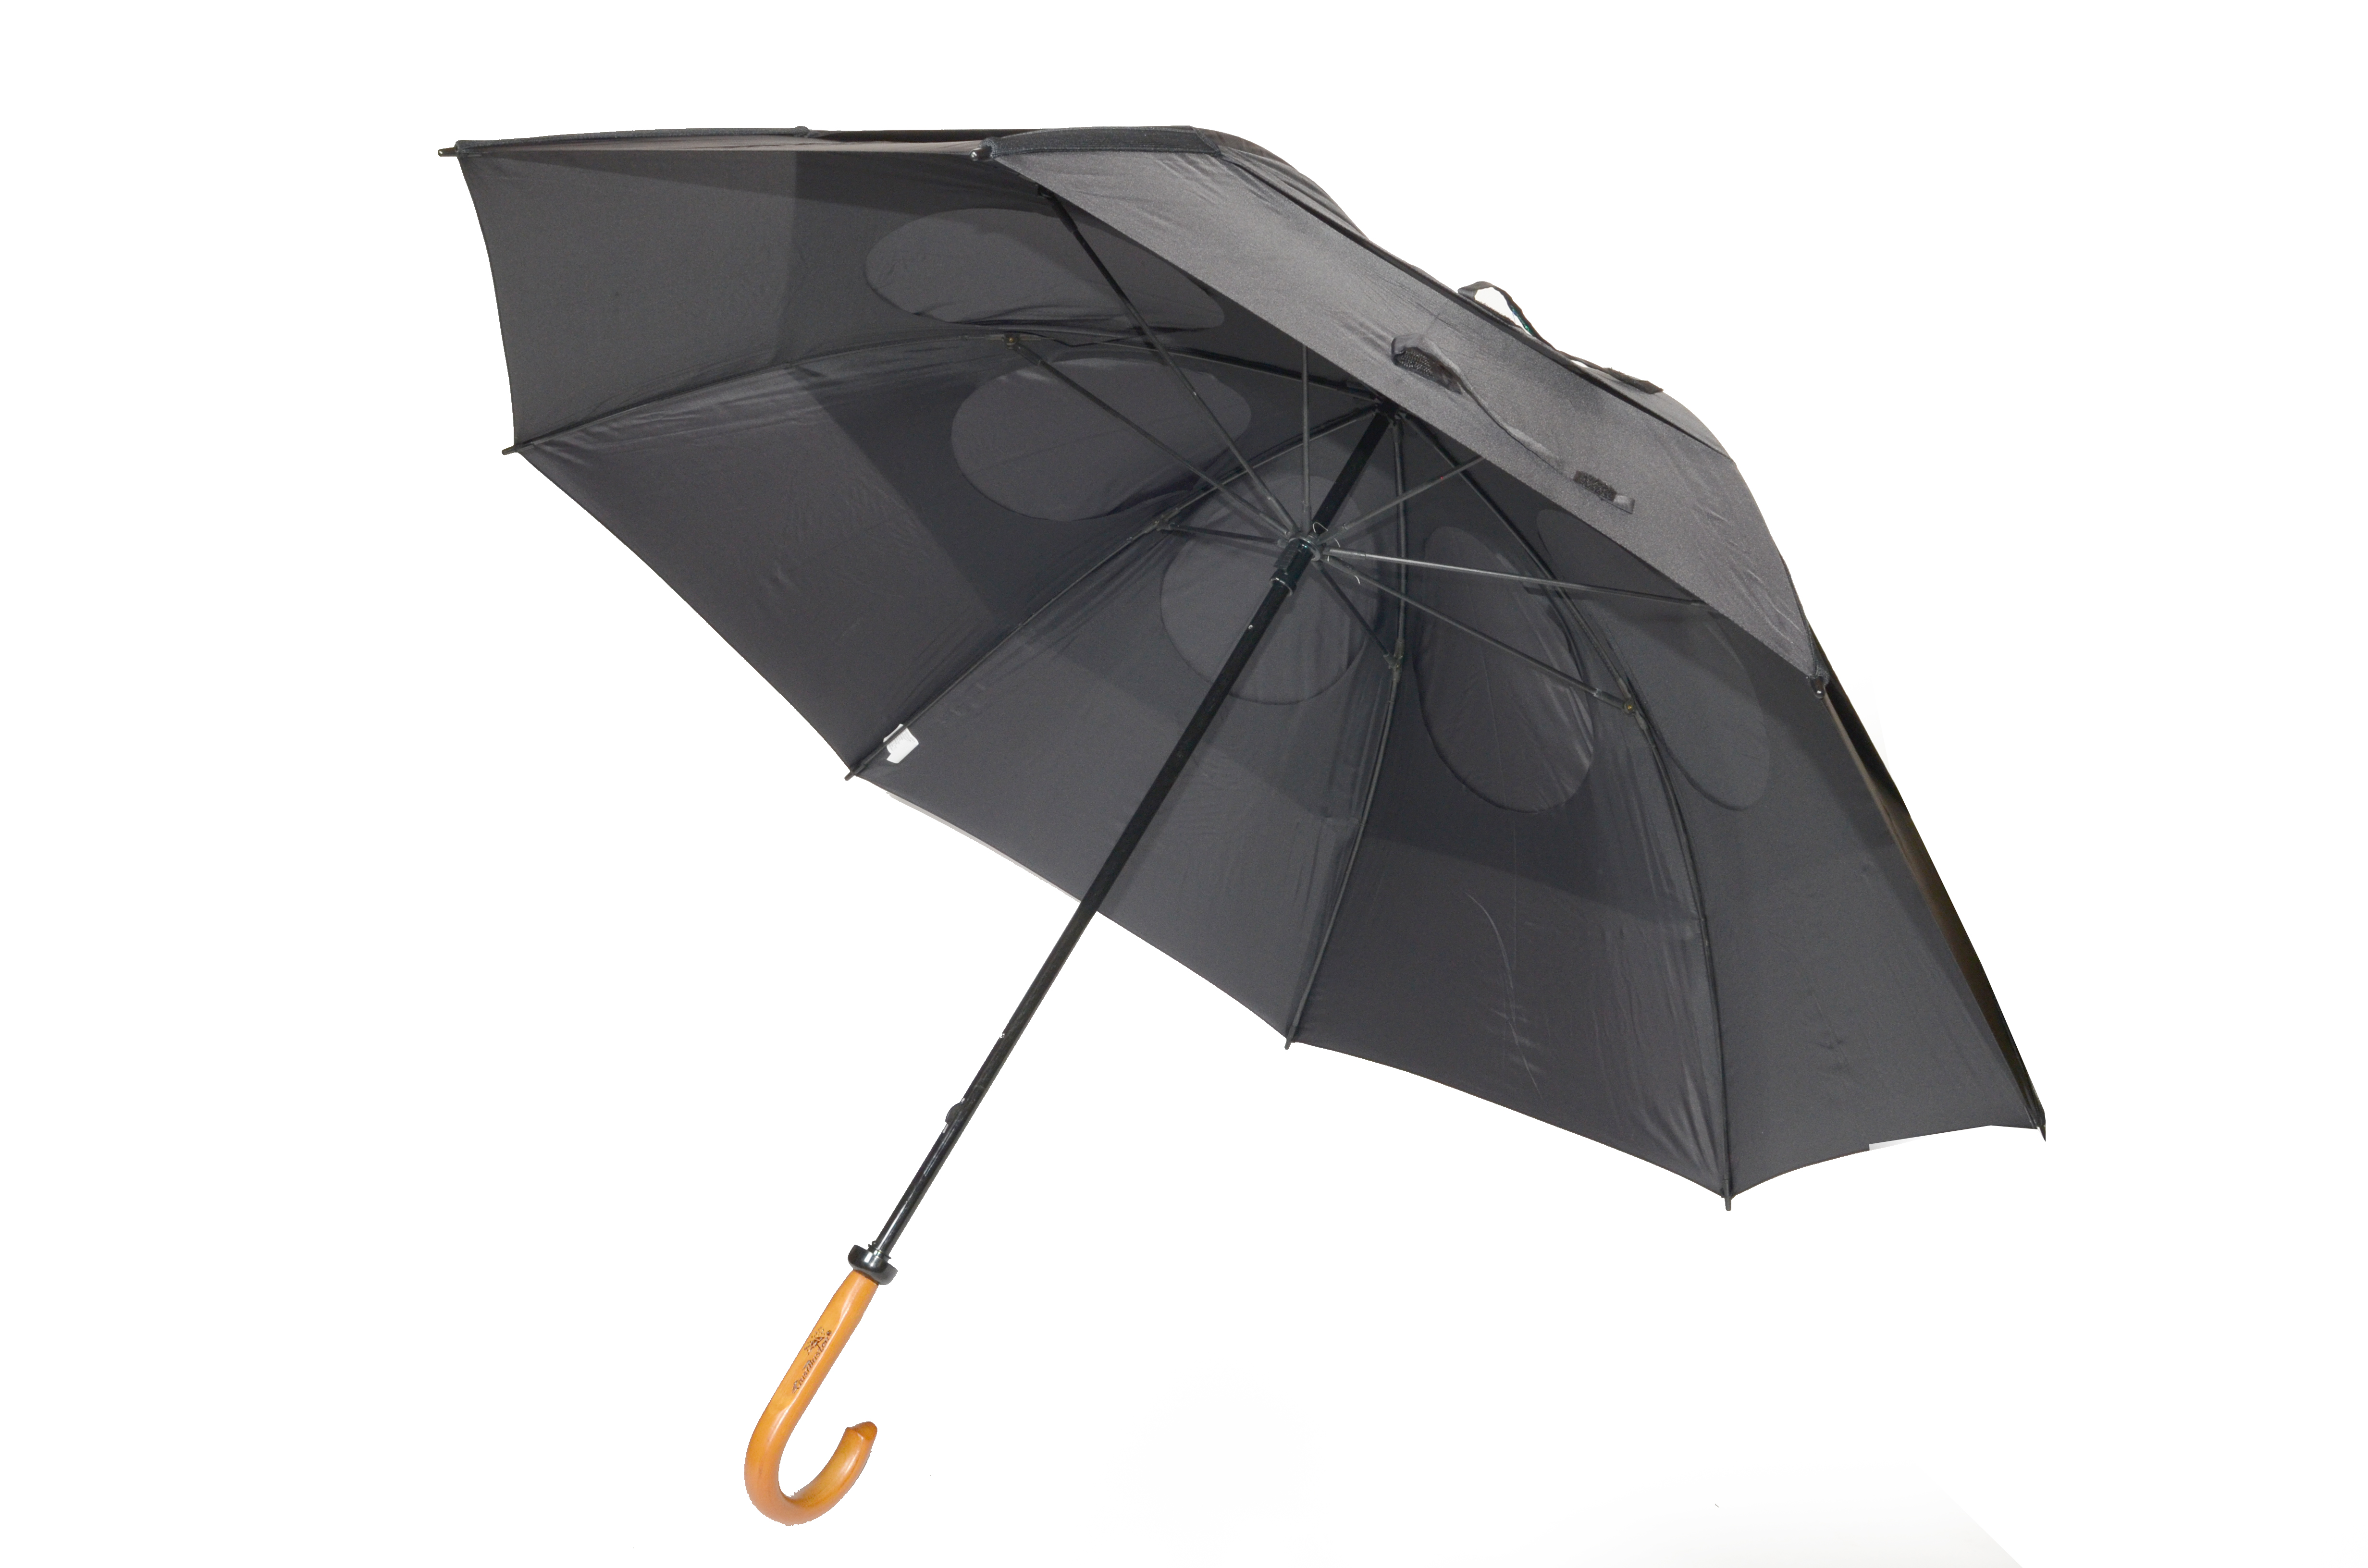 GustBuster umbrella, the world's smartest umbrella